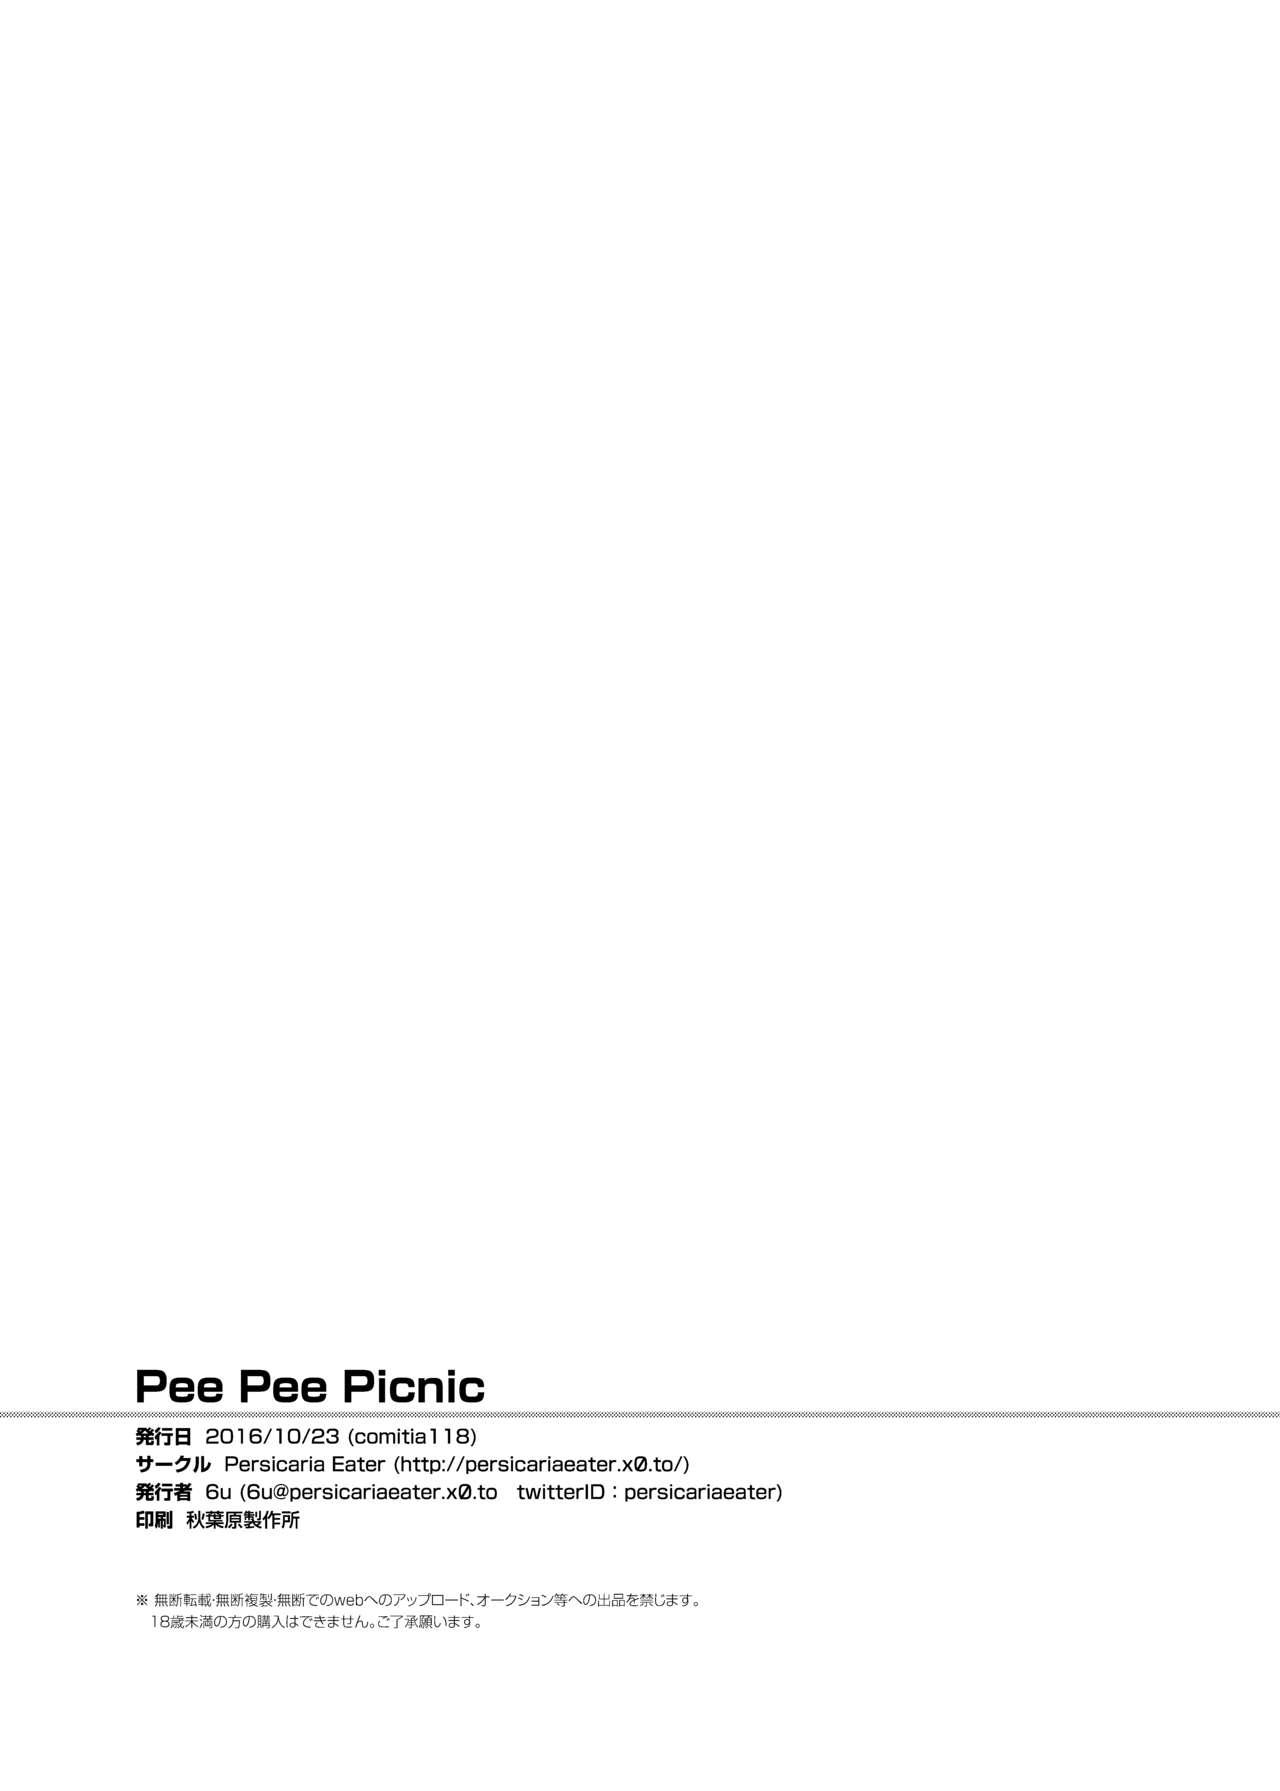 Pee Pee Picnic + Pee Pee Princess 21